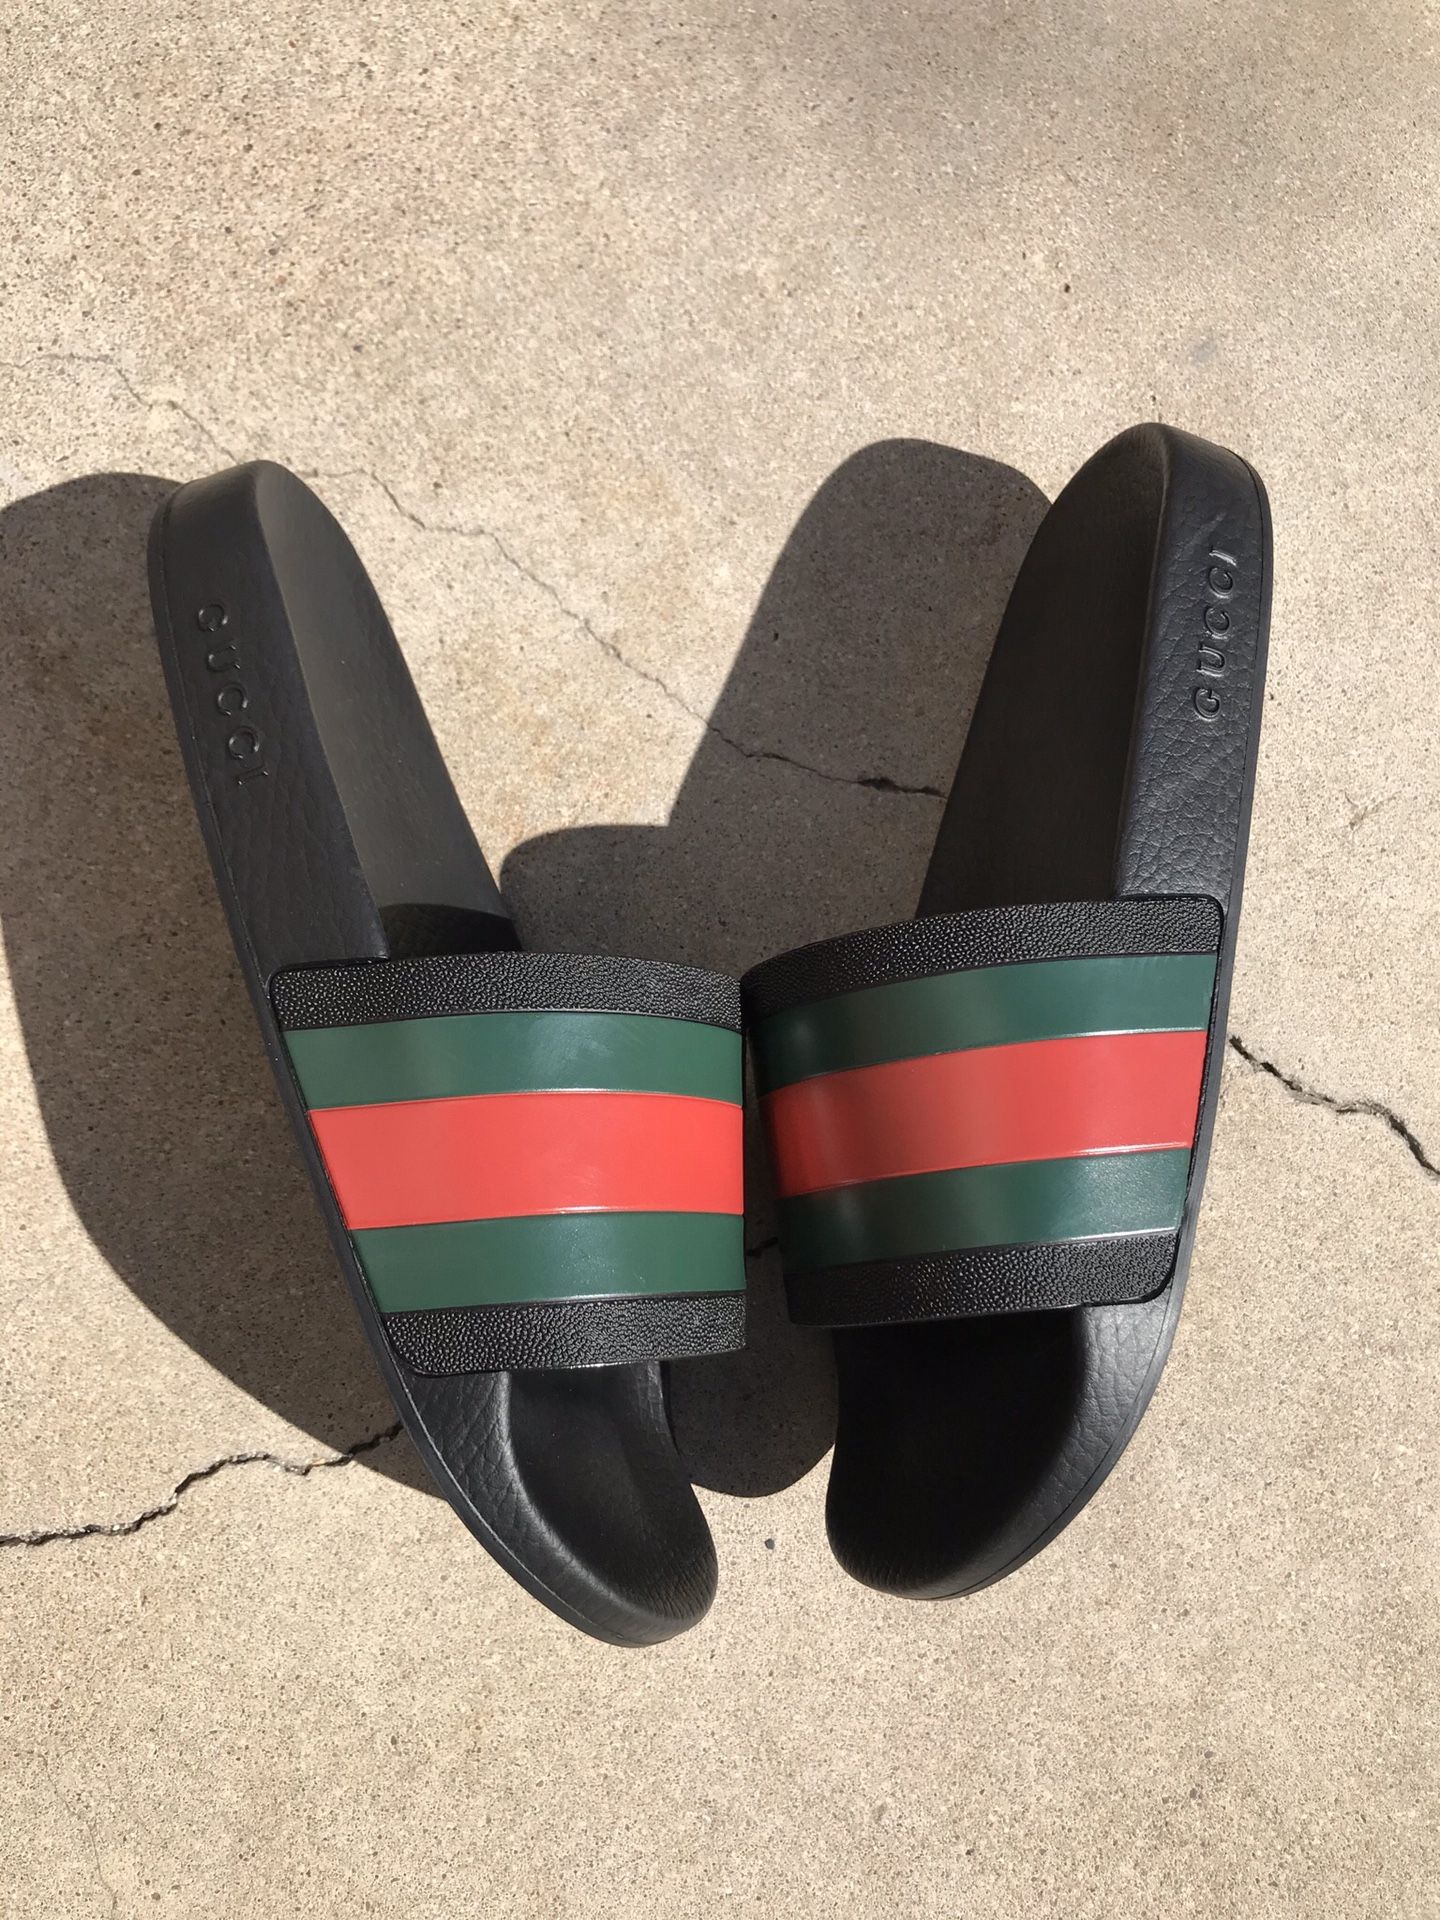 Gucci Pursuit ‘72 Rubber Slides Flip Flops Size 8G 9 US